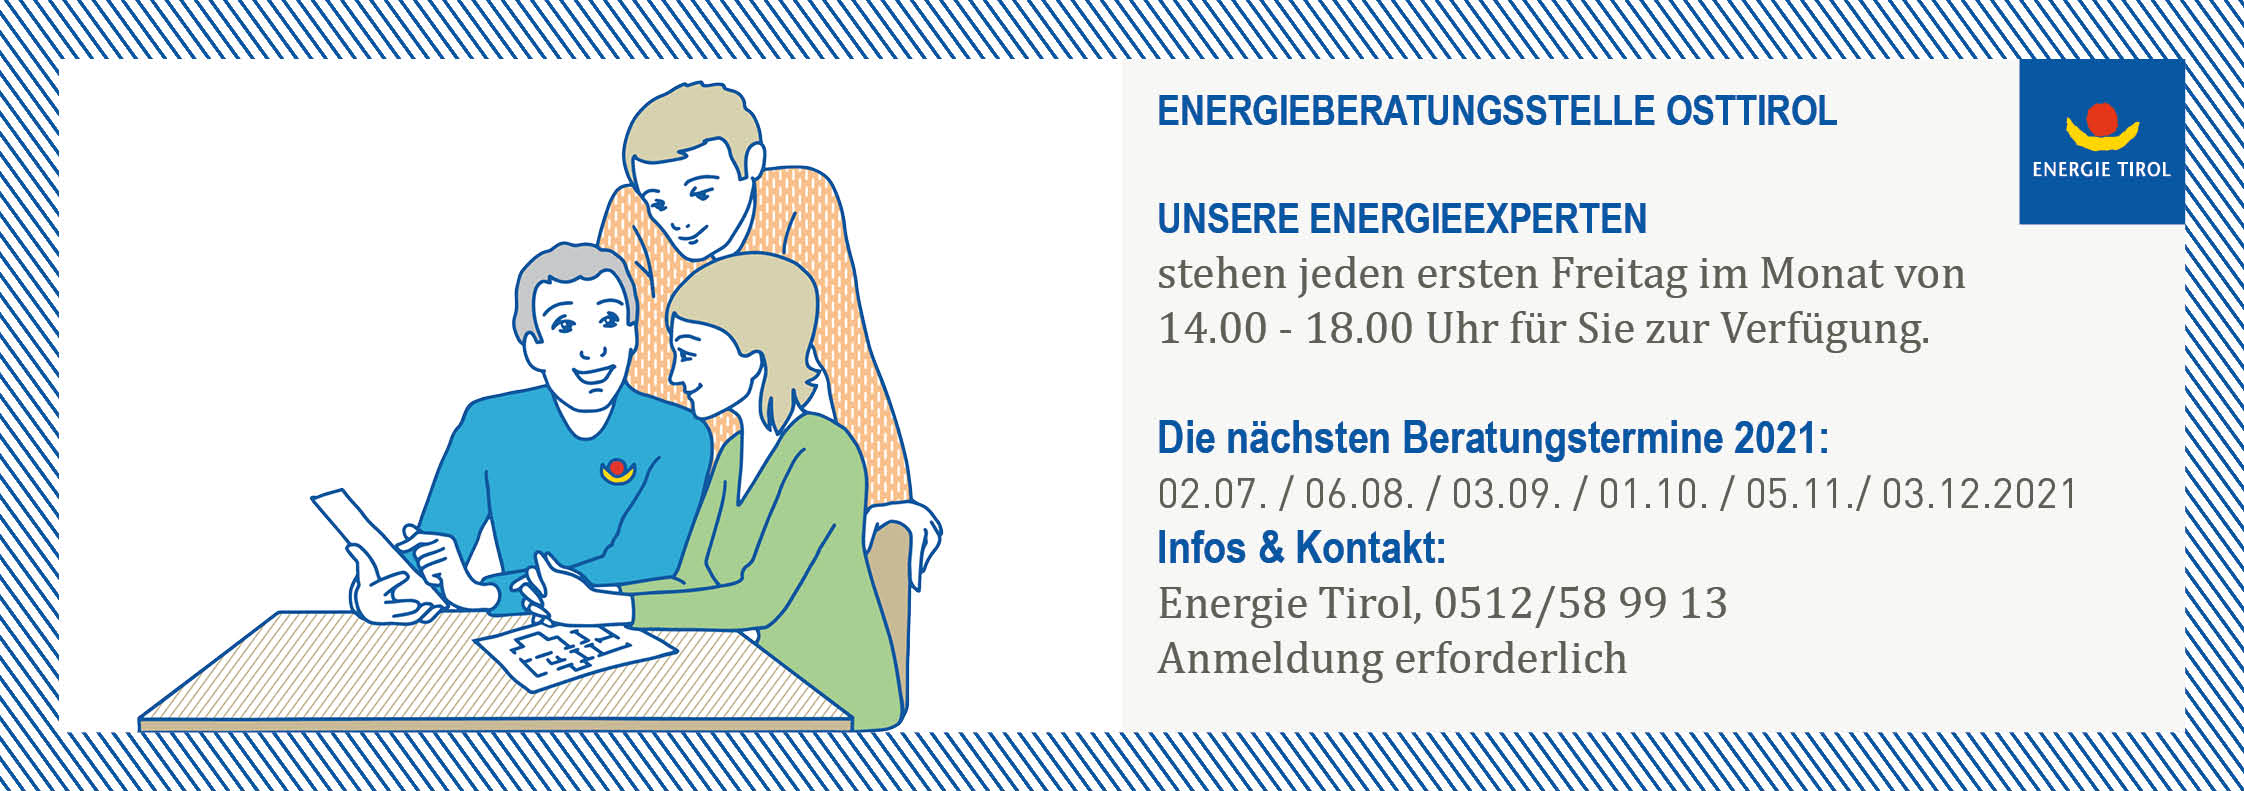 Energieberatungssteölle Osttirol 2HJ2021 groß